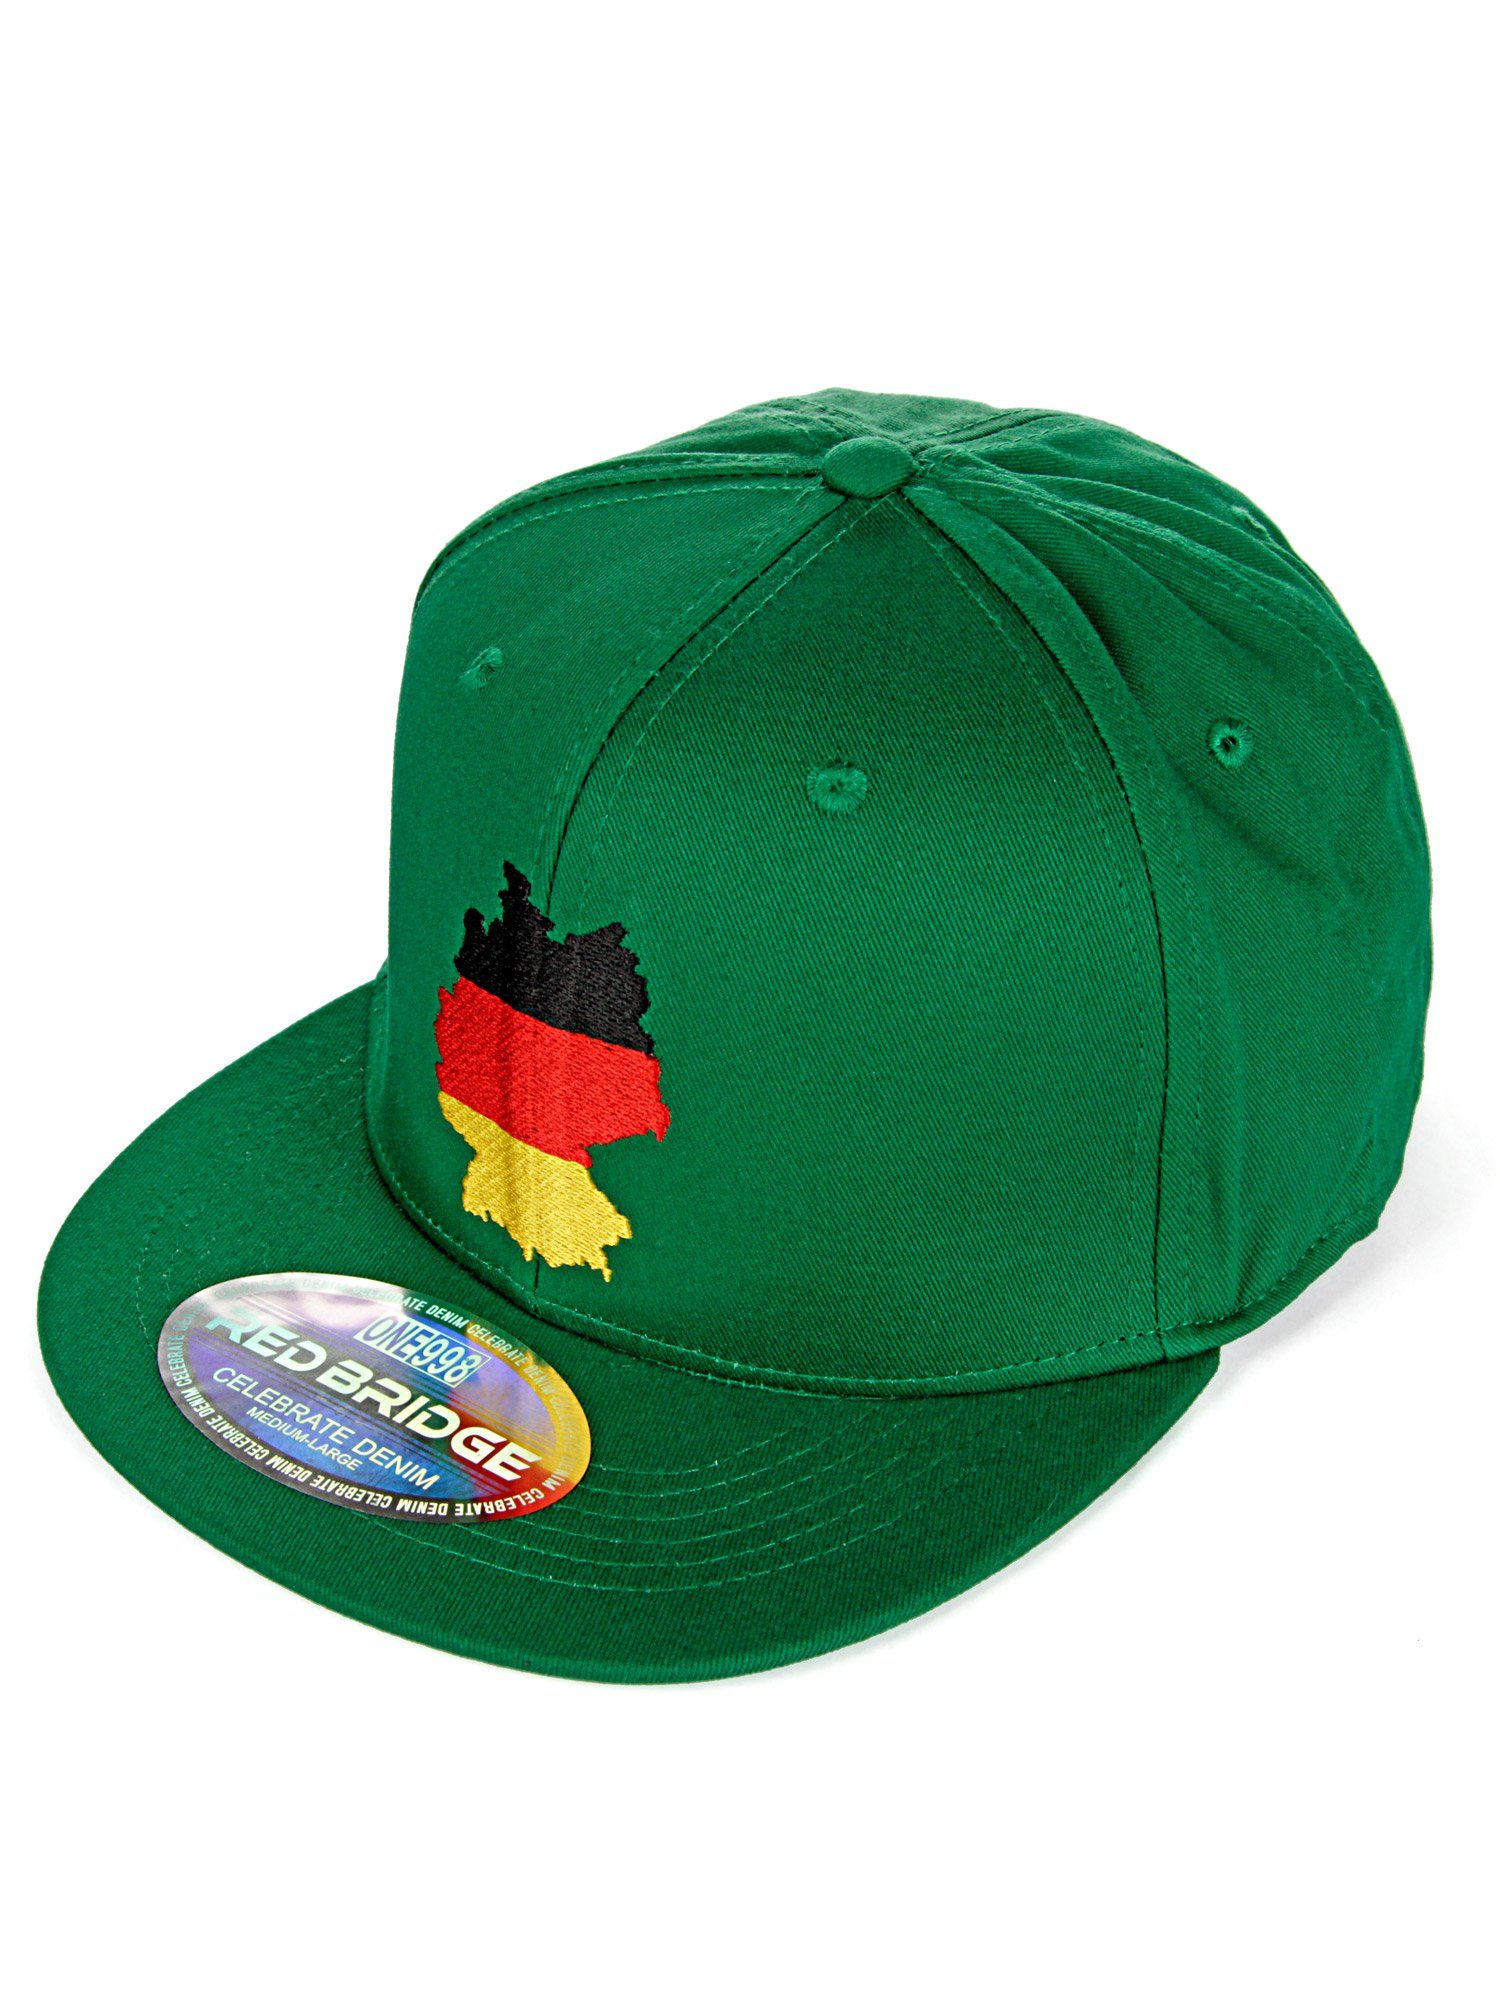 grün Cap mit RedBridge Deutschland-Stickerei trendiger Shoreham Baseball